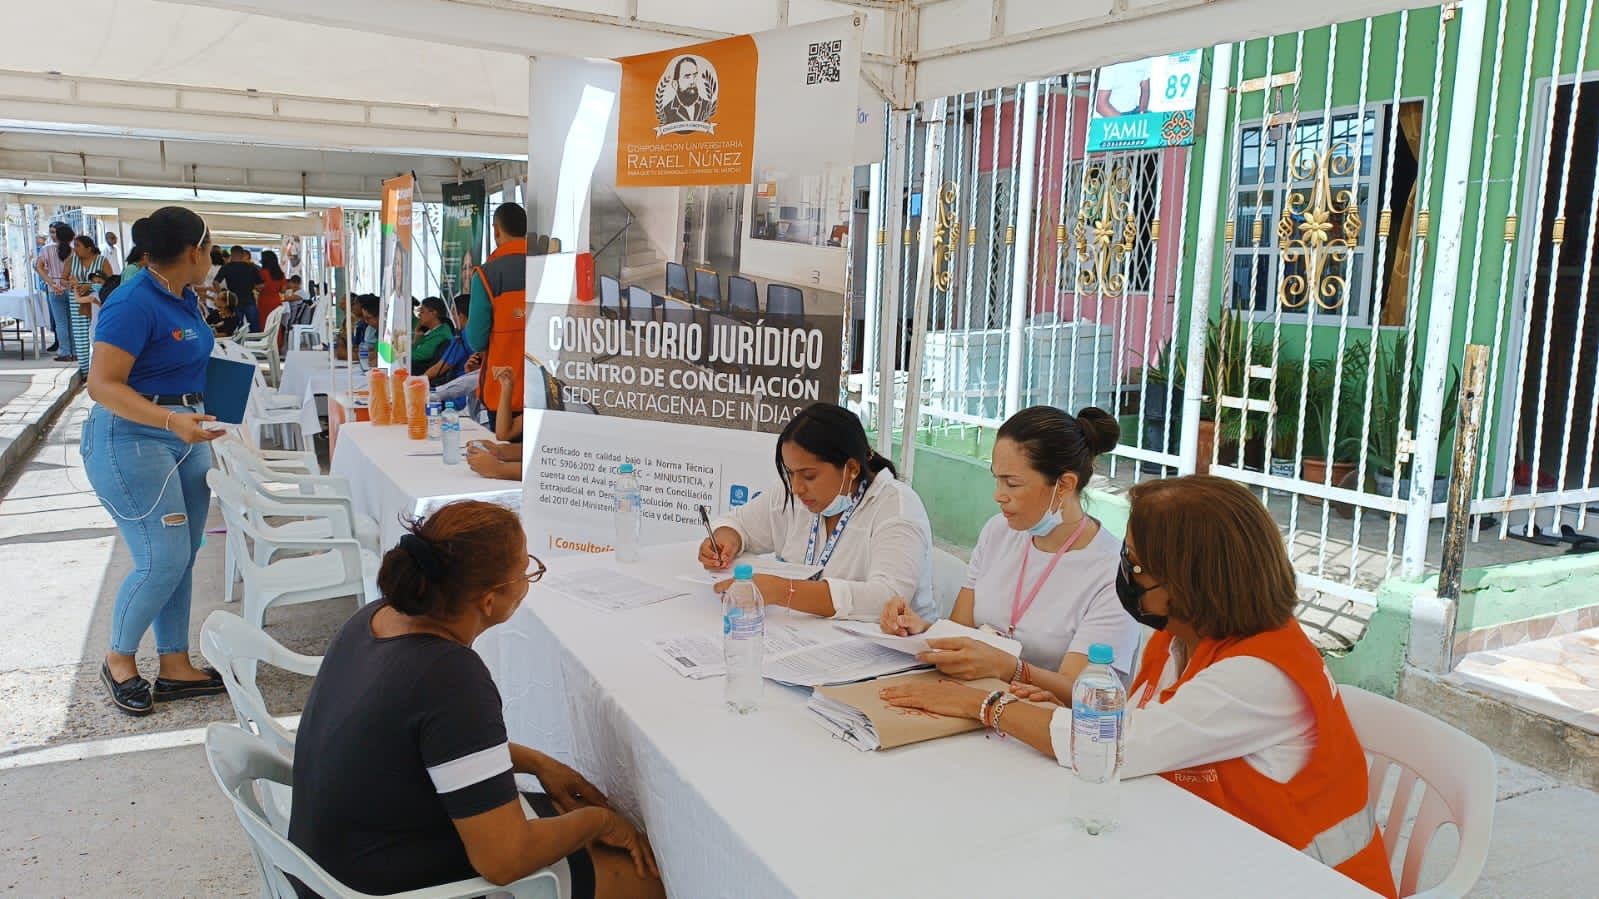 Consultorio Jurídico y Centro de Conciliación sede Cartagena, hizo presencia en la Jornada de atención integral con el PES Pedro Romero en el Barrio Camino del Medio